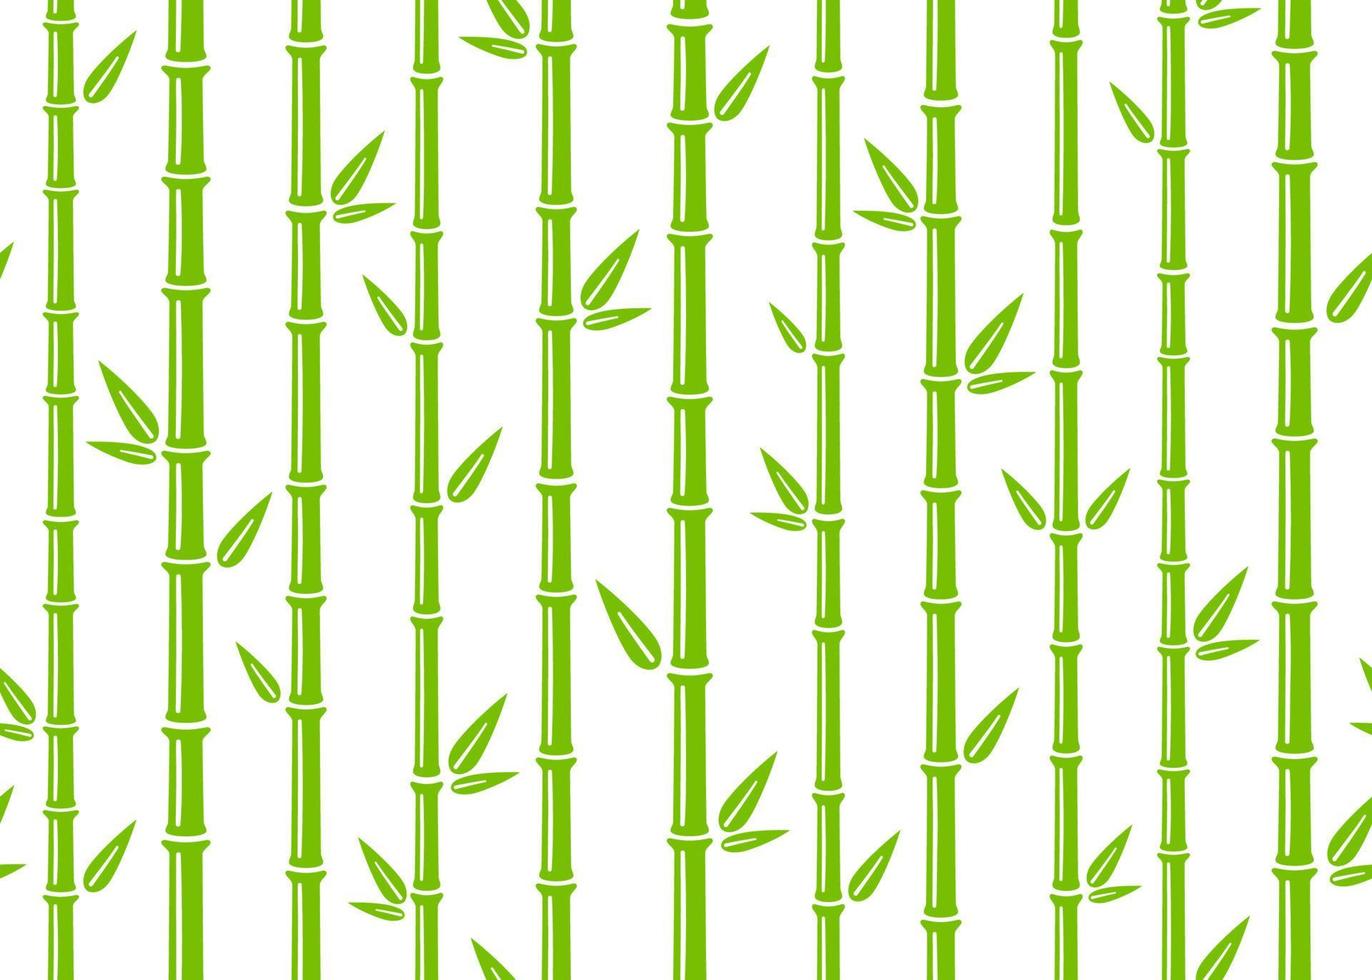 padrão sem emenda de bambu. fundo de bambu verde liso simples com talo, galho e folhas. design de pano de fundo da natureza. textura asiática abstrata. ilustração vetorial em fundo branco vetor